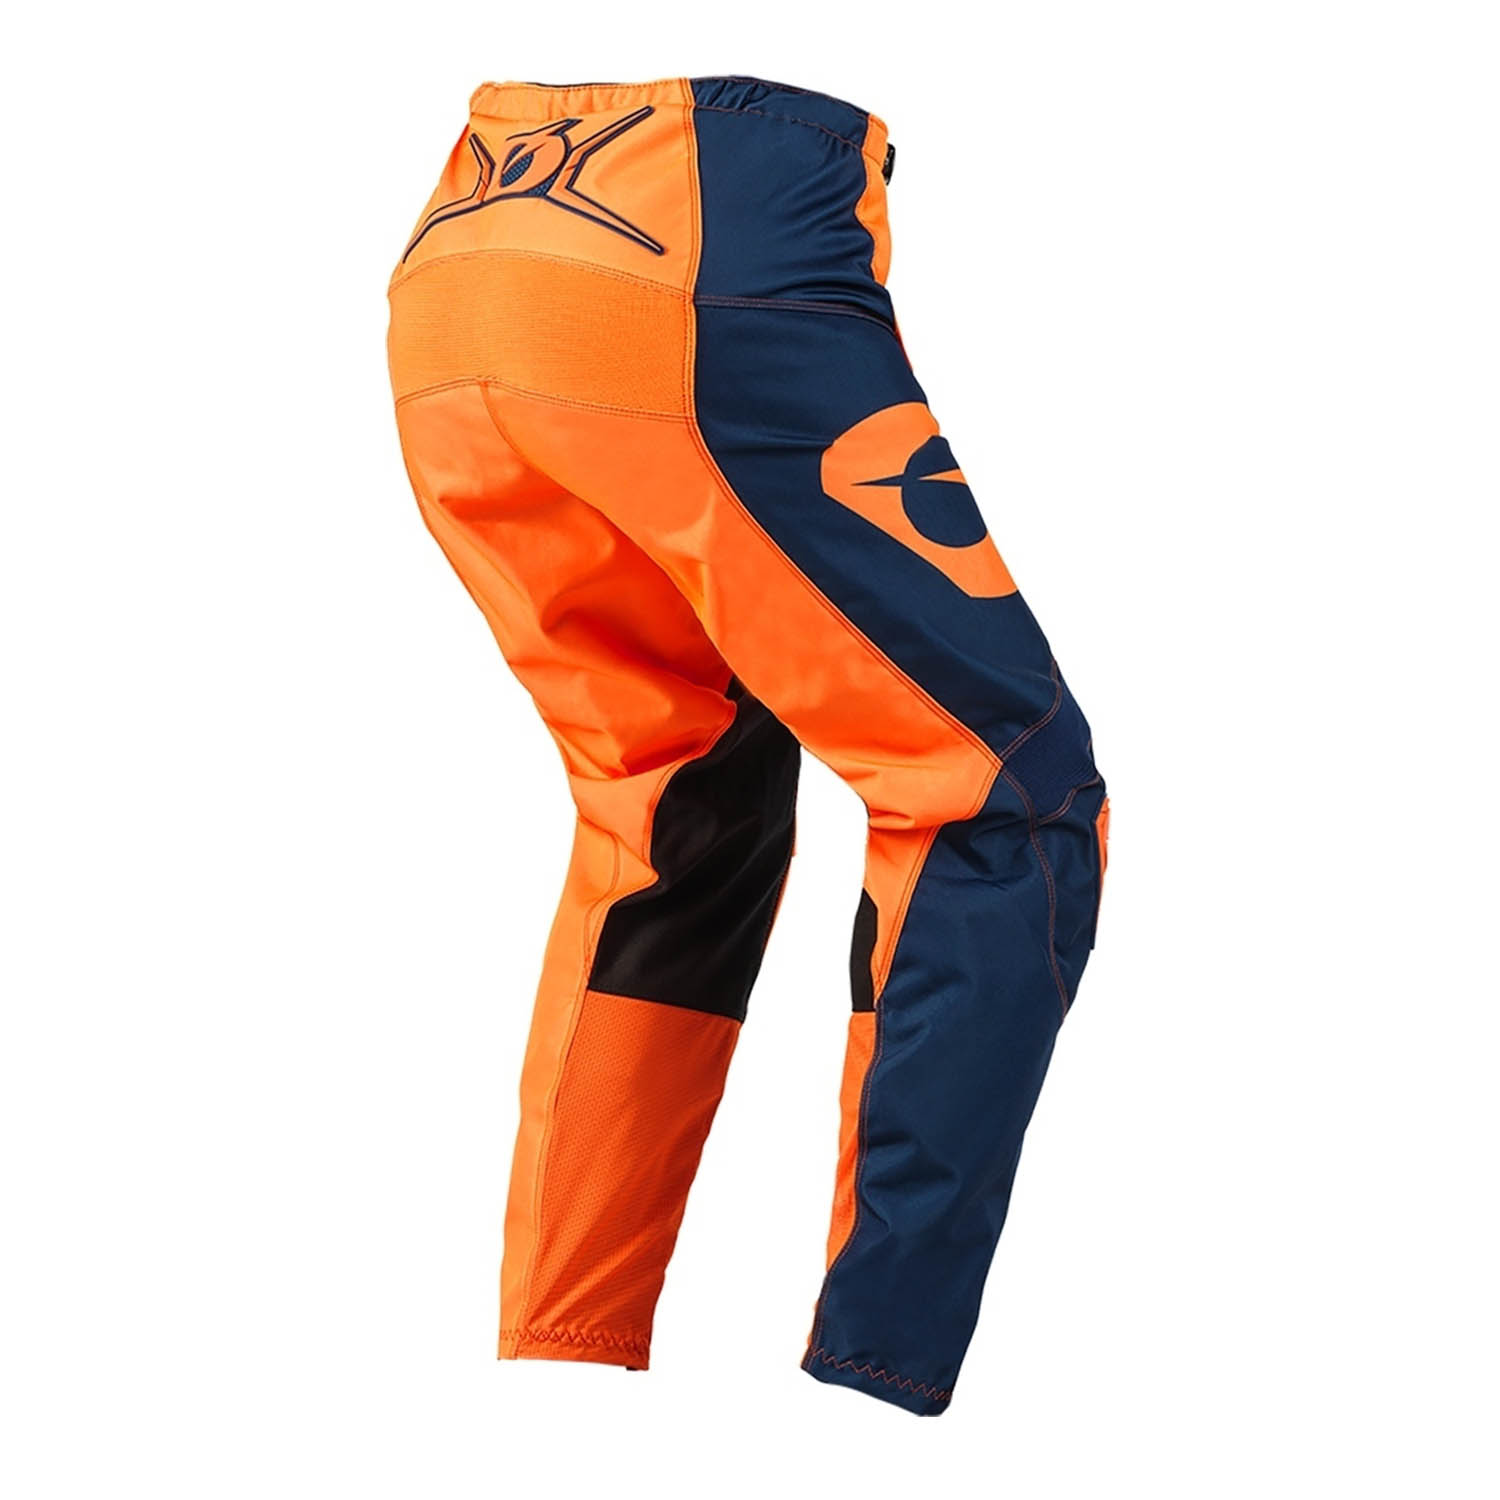 Штаны для мотокросса O'NEAL ELEMENT PANTS RACEWEAR оранжево-синего цвета, вид сзади купить по низкой цене